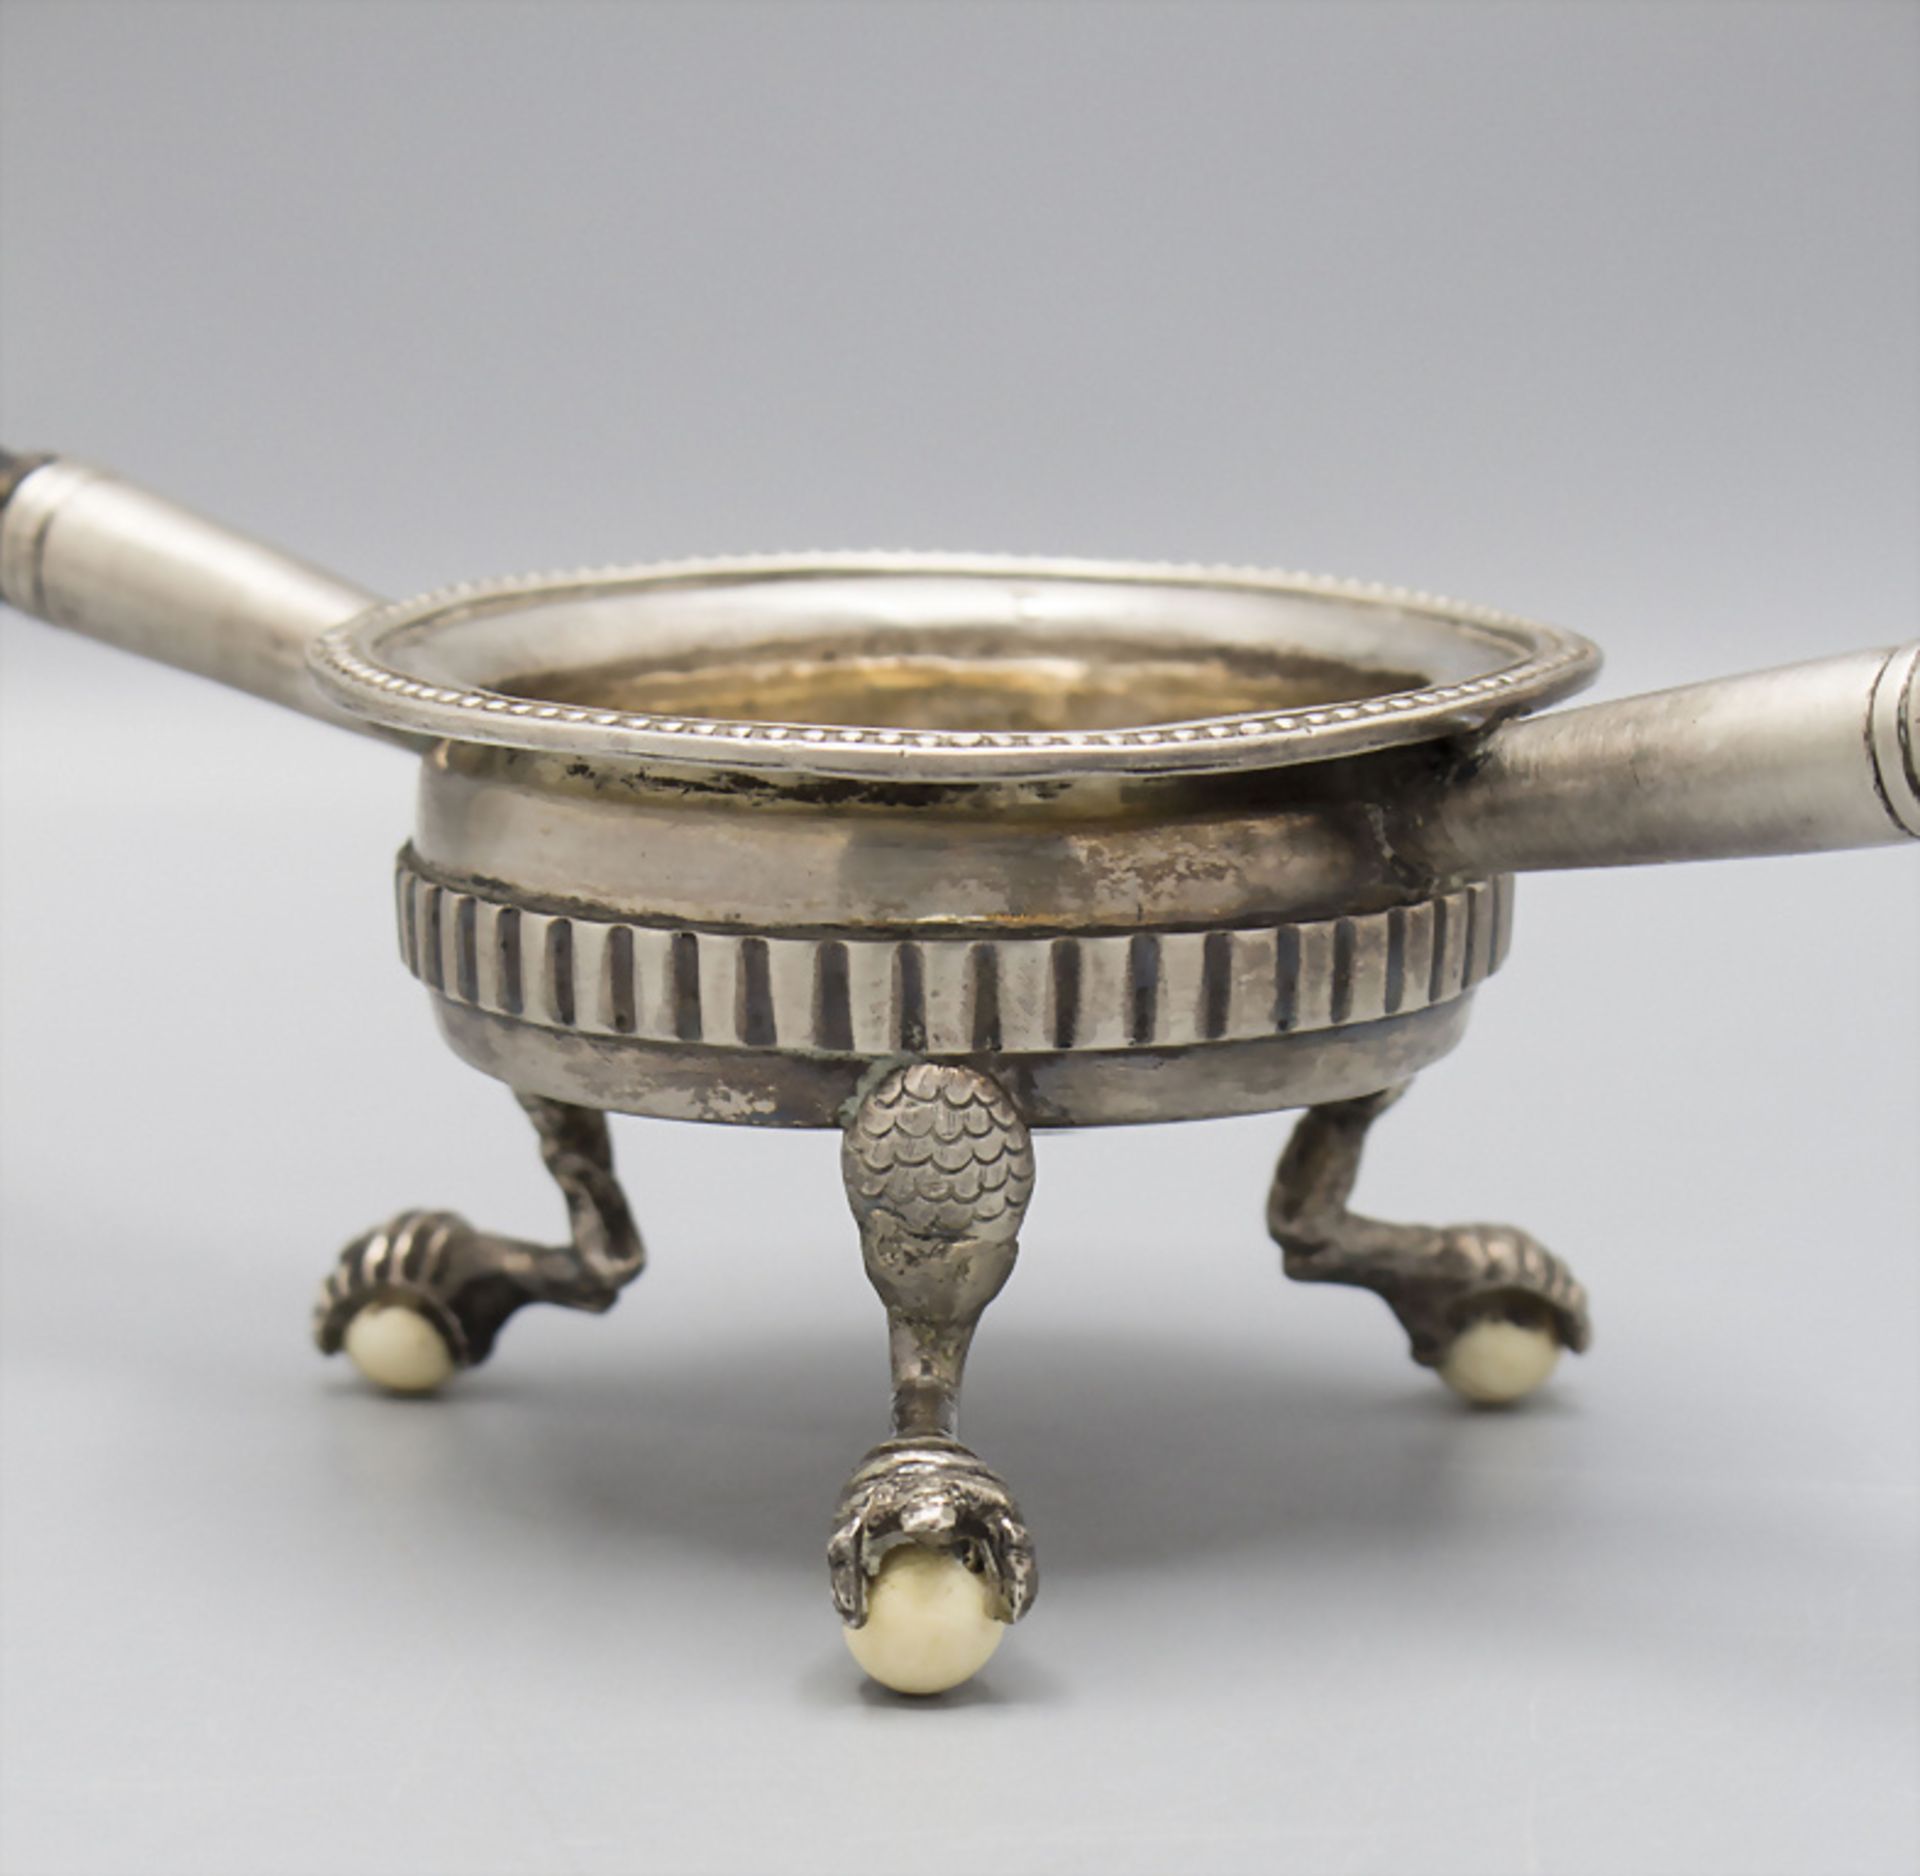 Gewürzschale mit zwei Handhaben / A silver bowl with handles, wohl Südamerika, 19. Jh. - Bild 2 aus 3